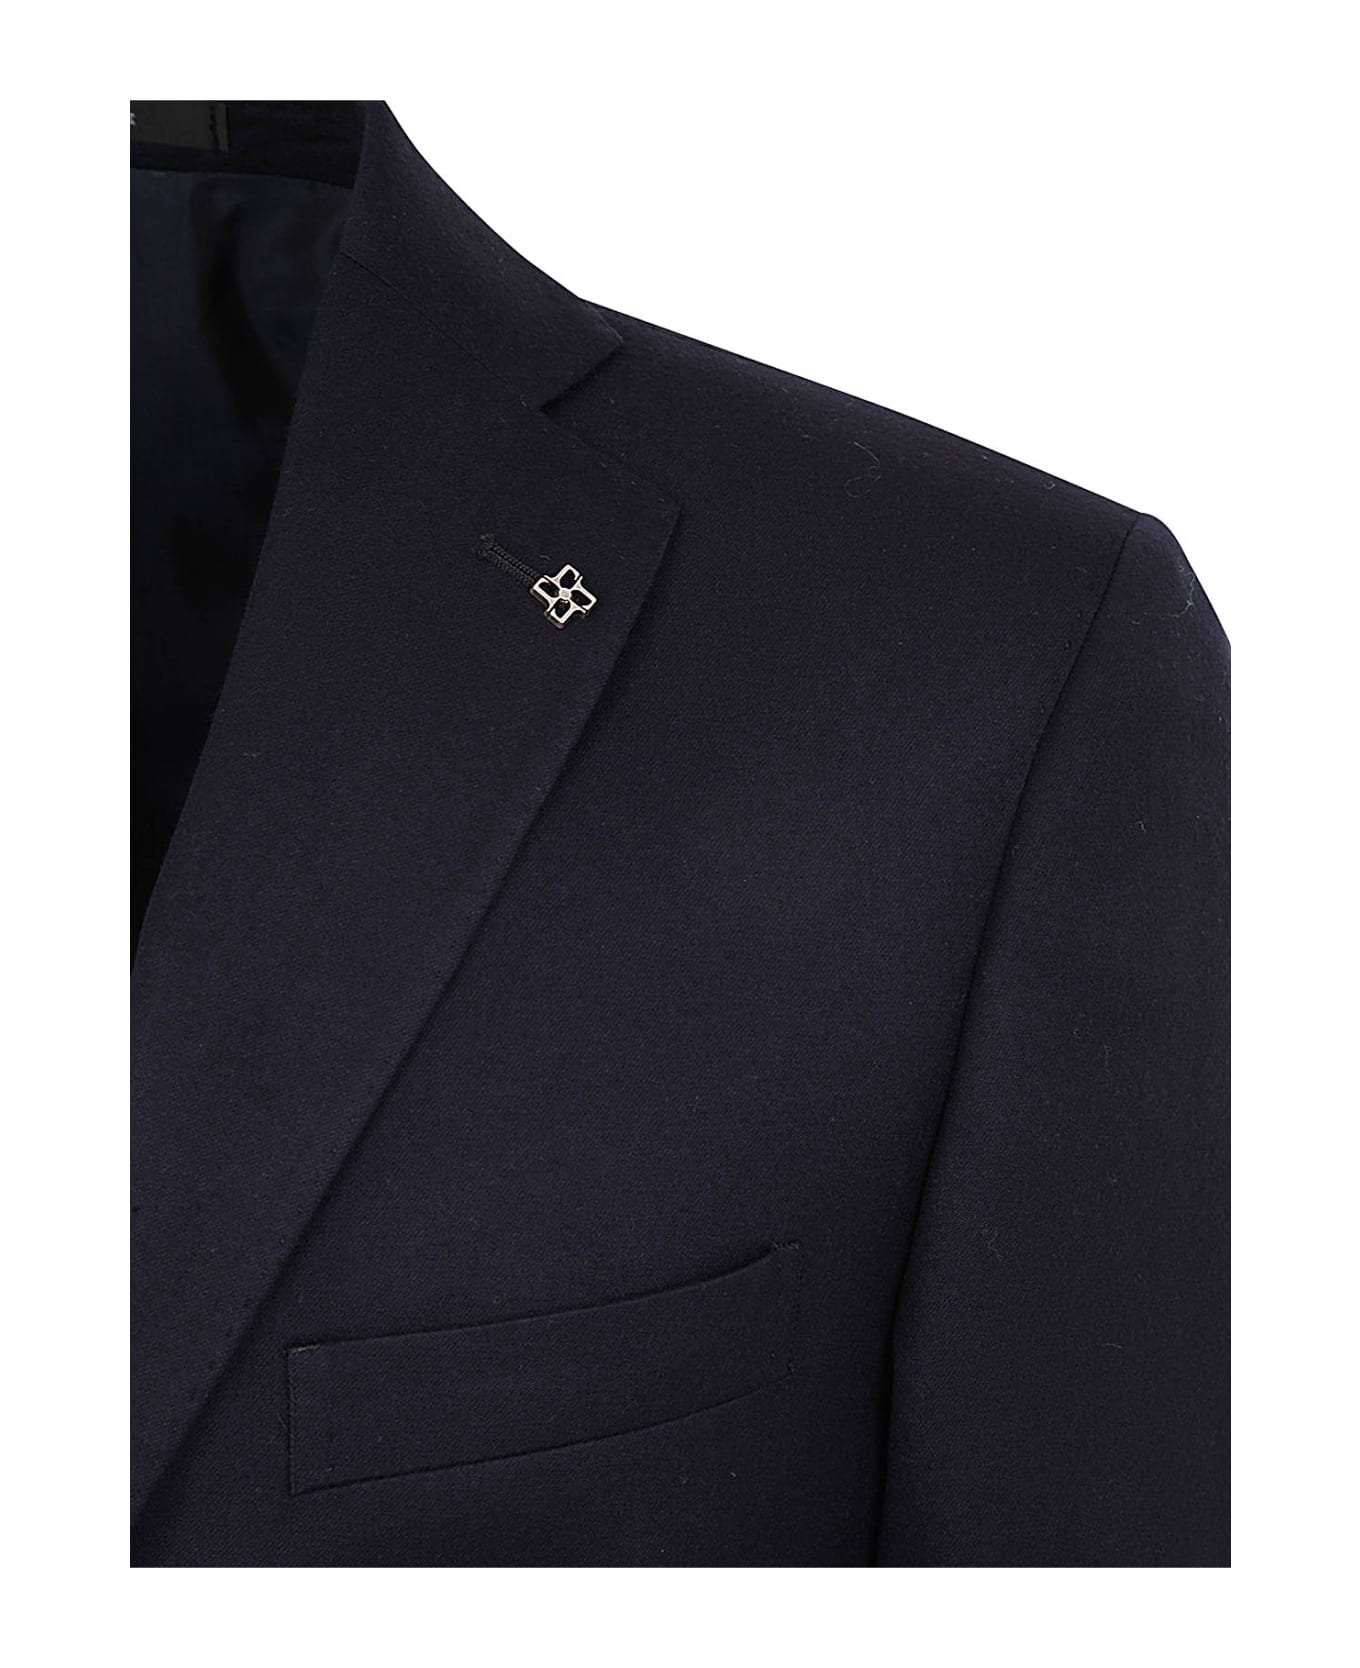 Men's Louis Vuitton Paris Tailor Made Suit 40US/UK 50IT Gray Wool Two  Button